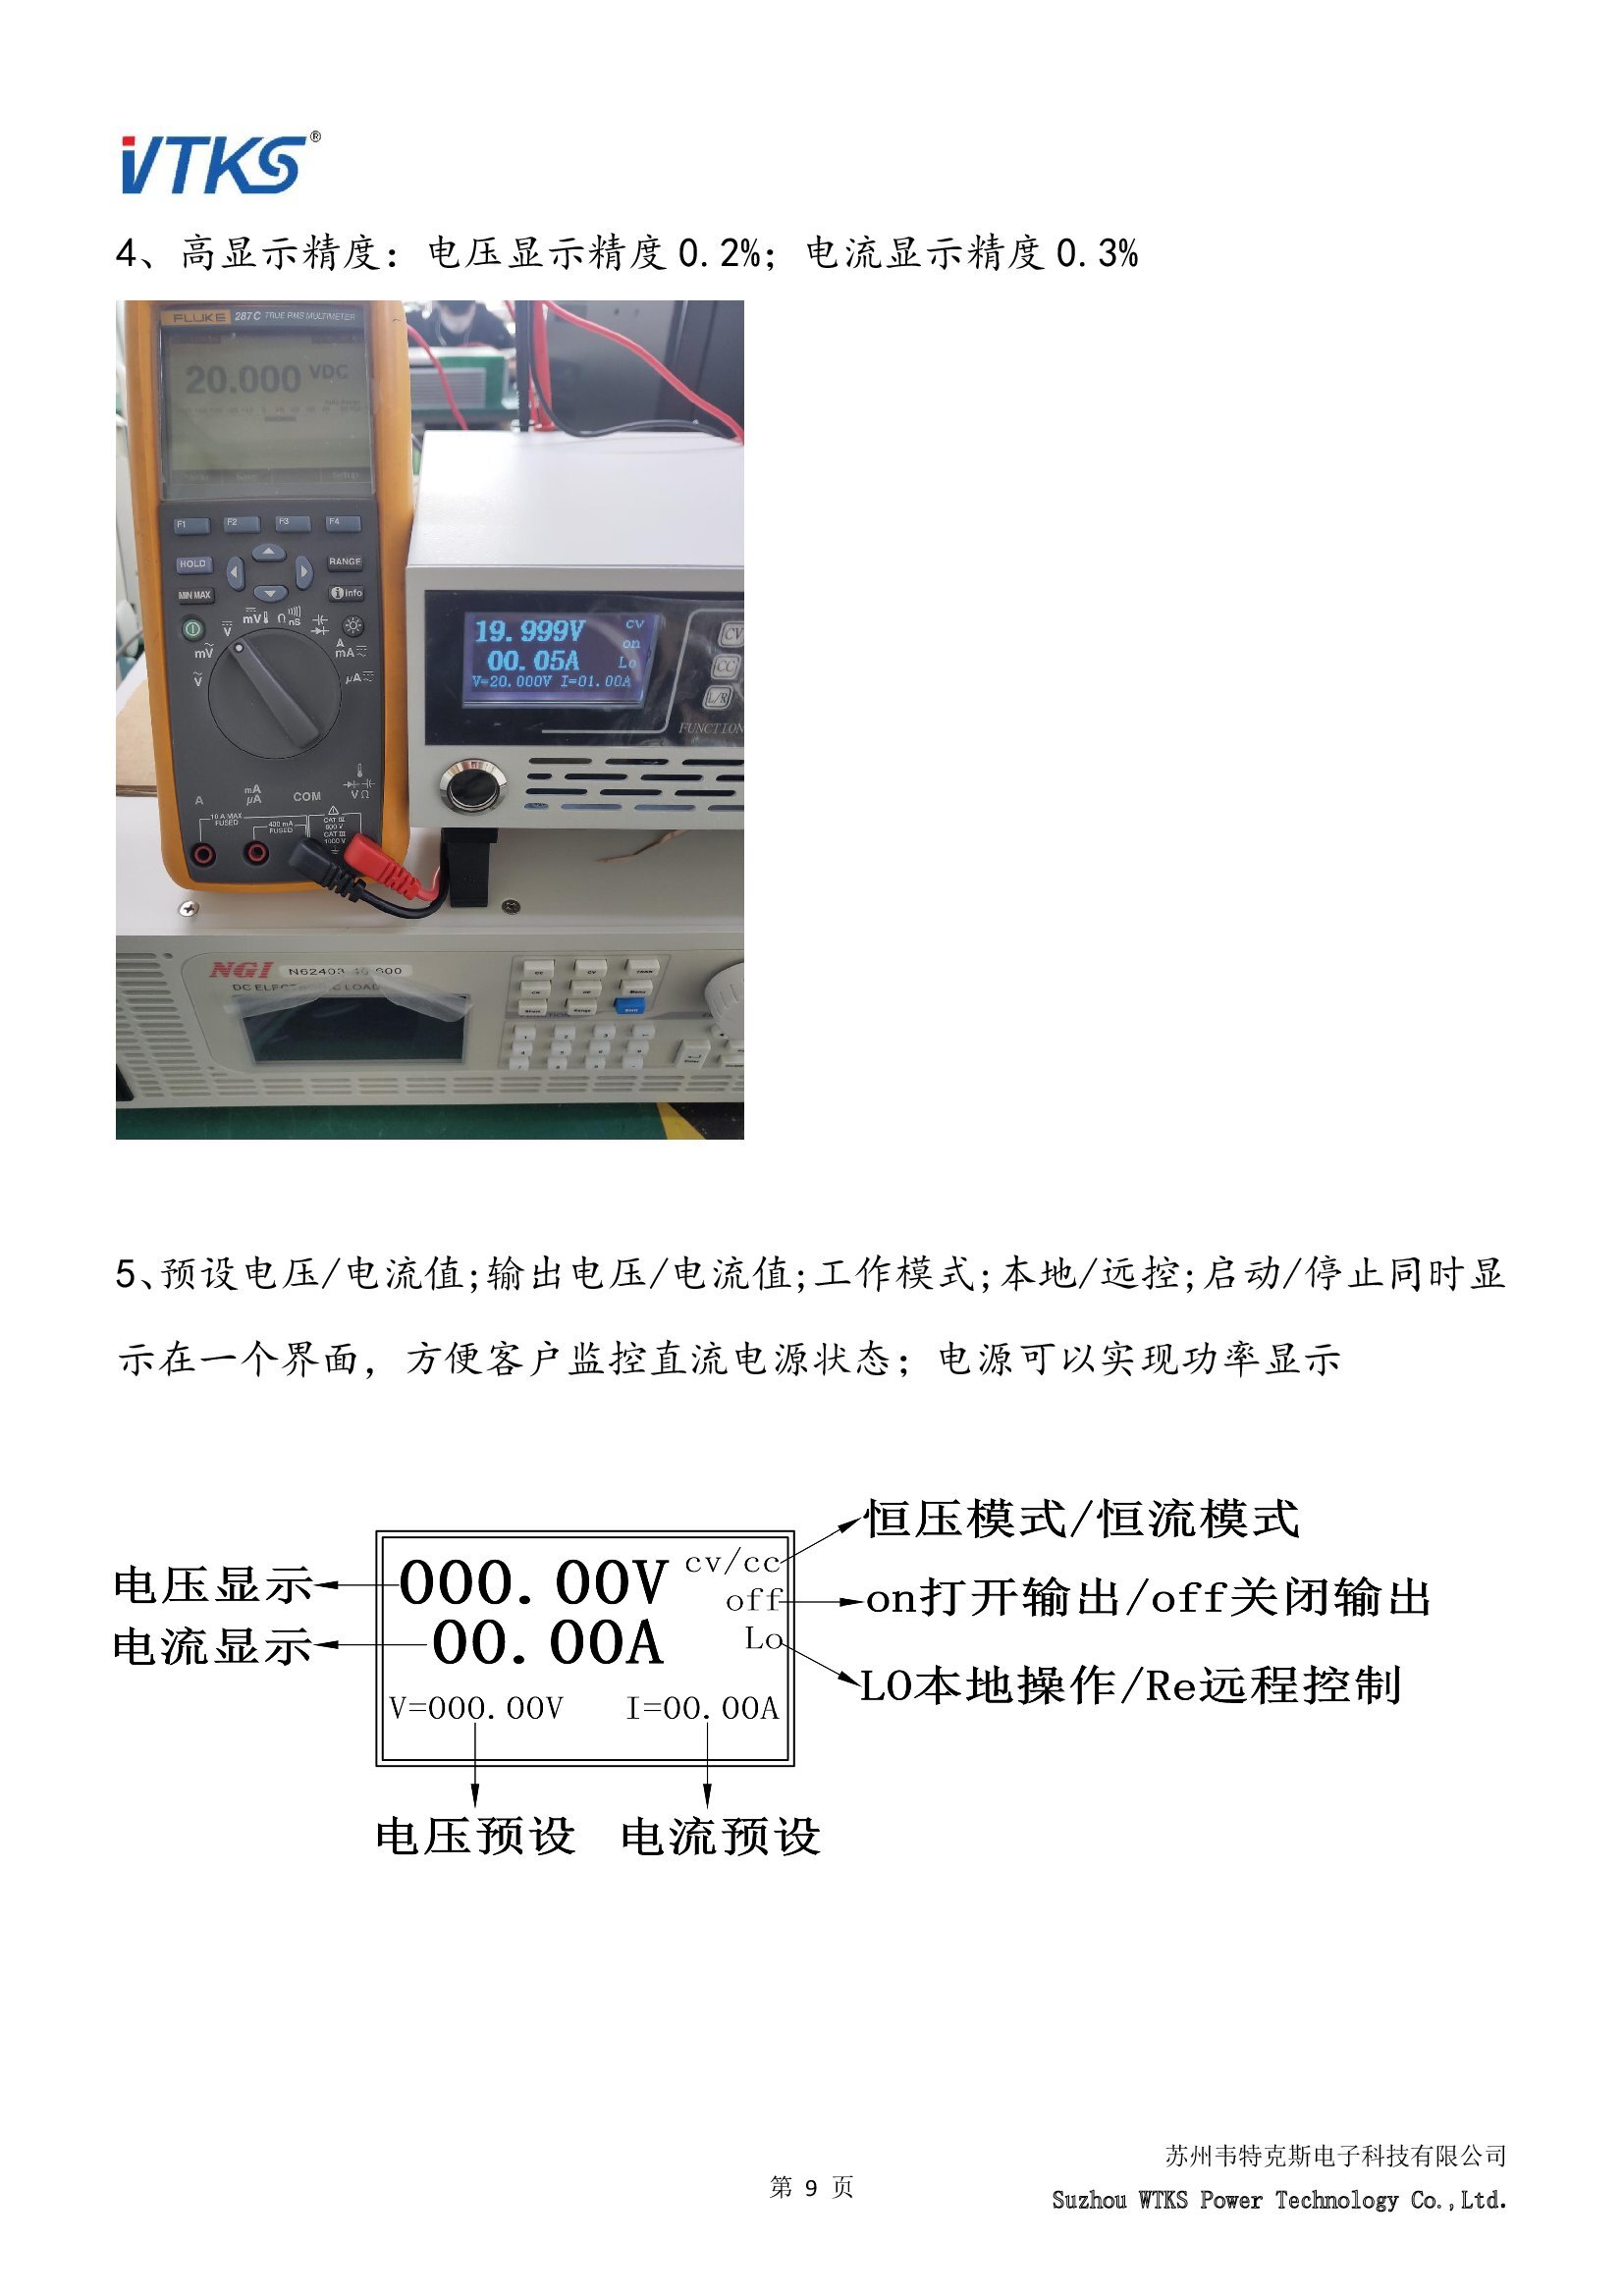 WSD-10KW系列数字直流电源技术资料_V1.06_00009.jpg